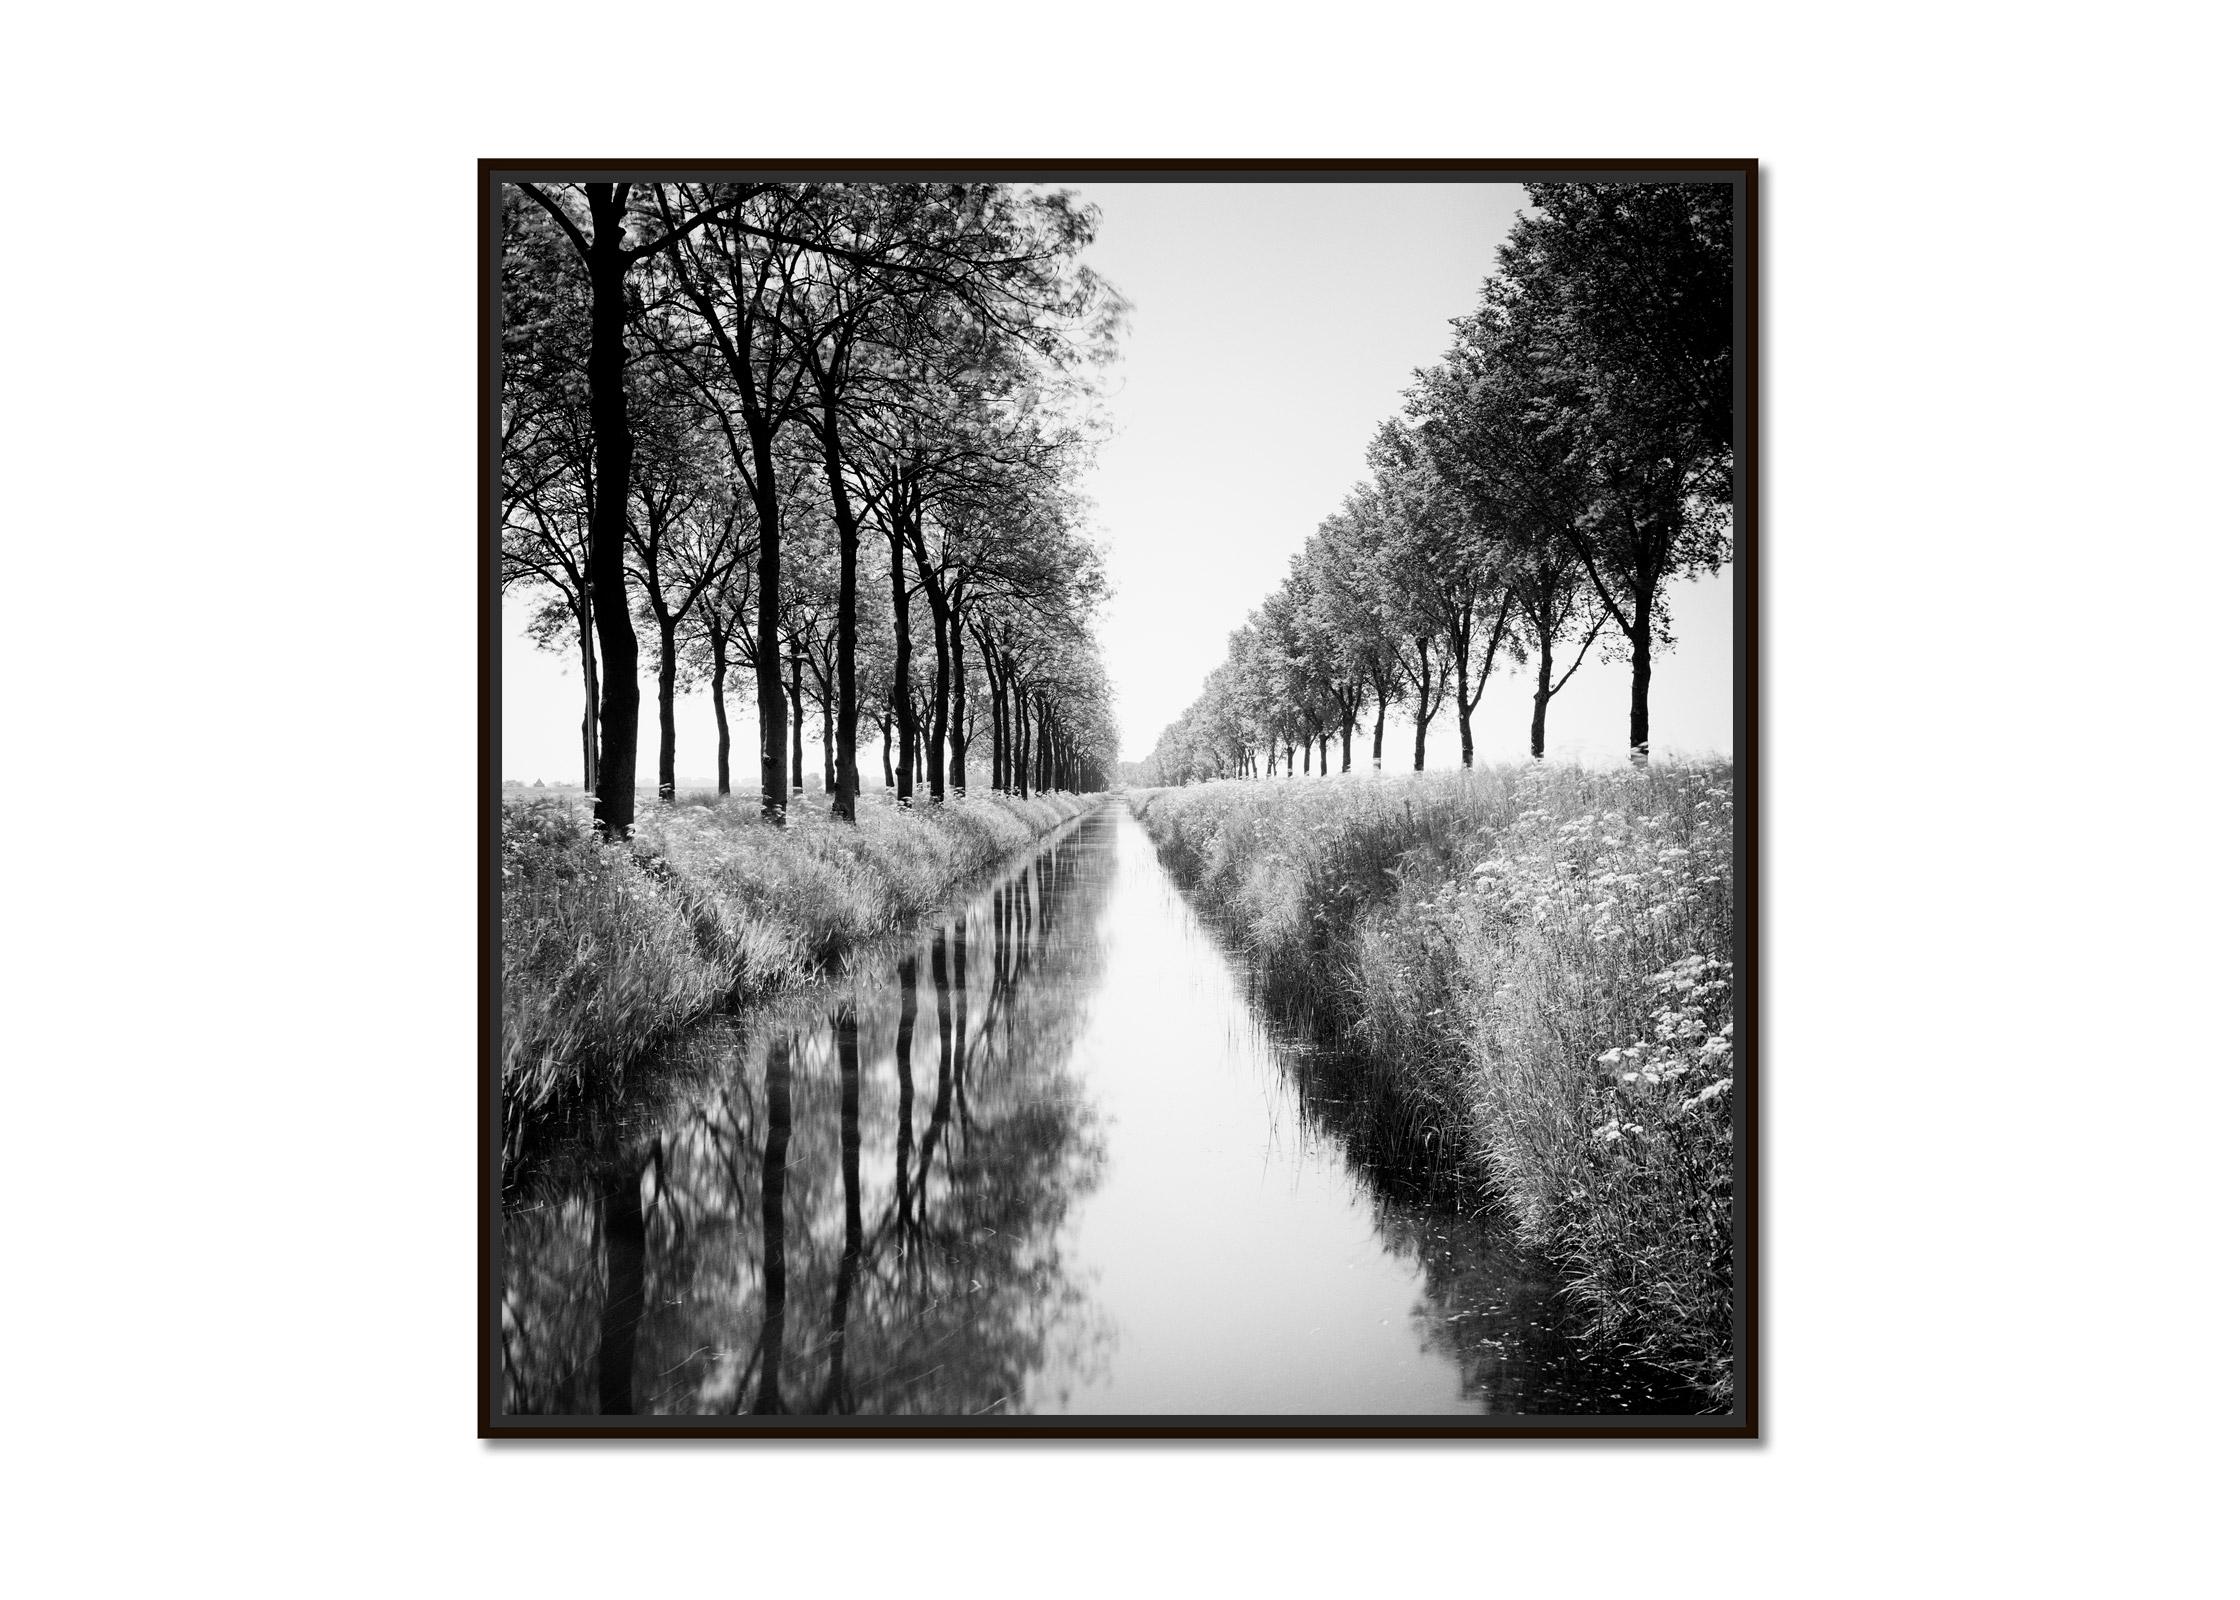 Gracht, Tree Avenue, Wasserspiegelung, Schwarz-Weiß-Fotografiedruck – Photograph von Gerald Berghammer